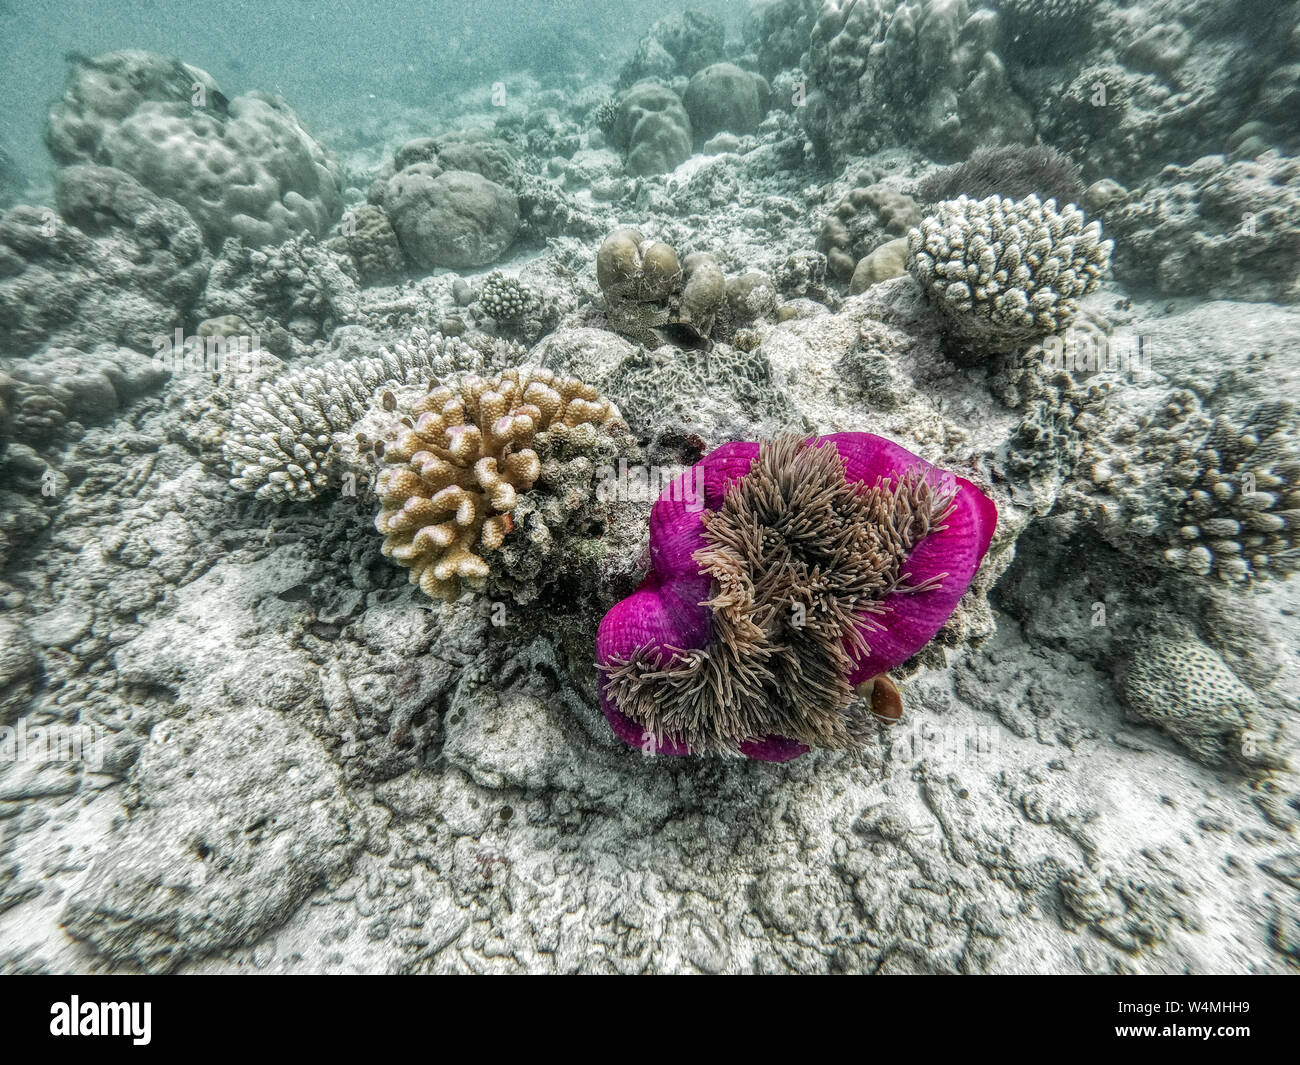 Dans cette unique photo vous pouvez voir le monde sous-marin de l'océan Pacifique dans les Maldives ! Beaucoup de coraux et poissons tropicaux ! Banque D'Images